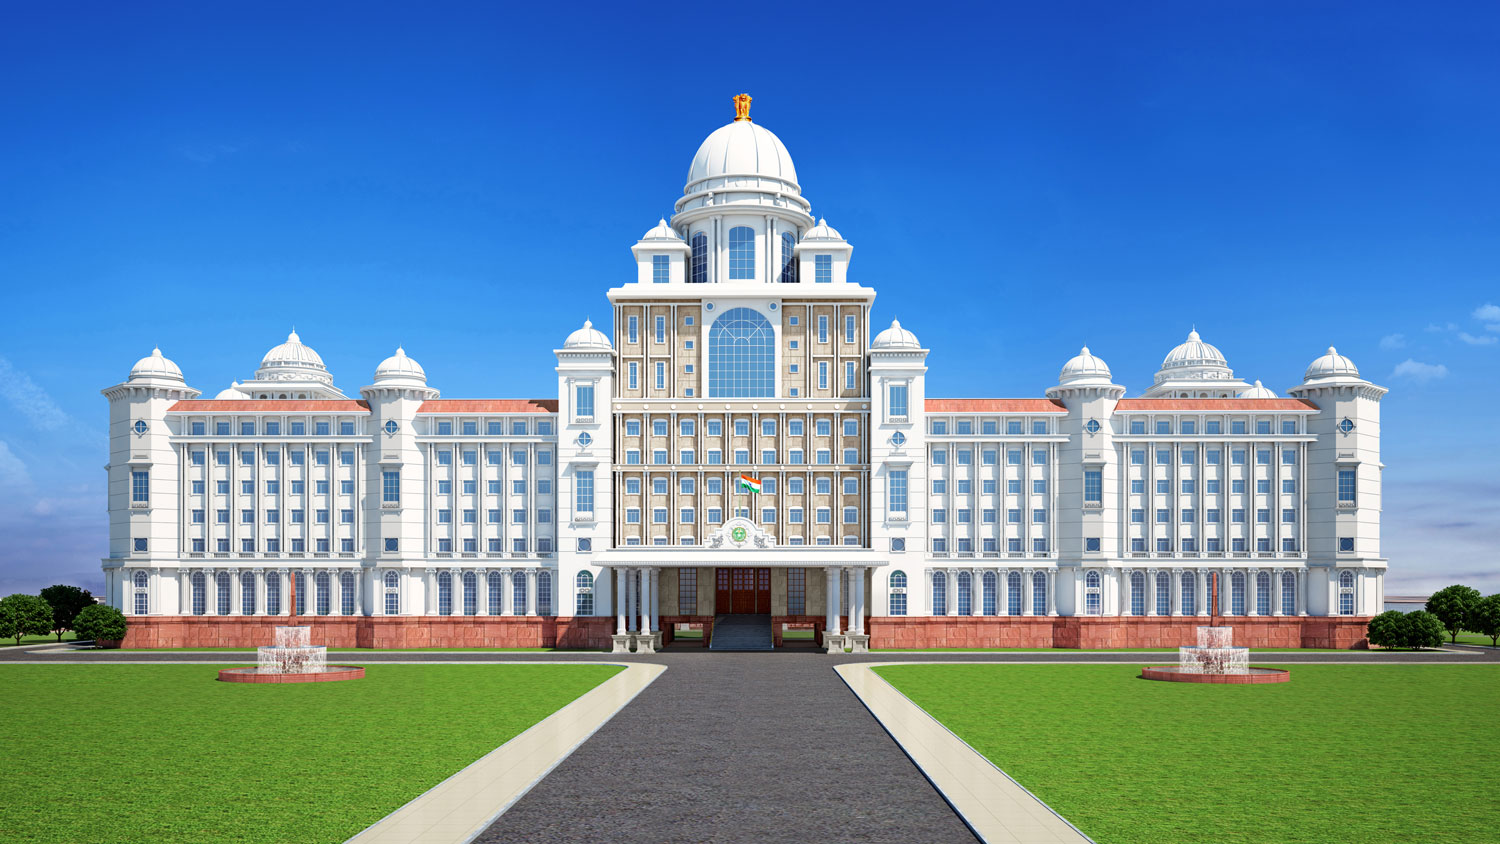 Telangana Secretariat